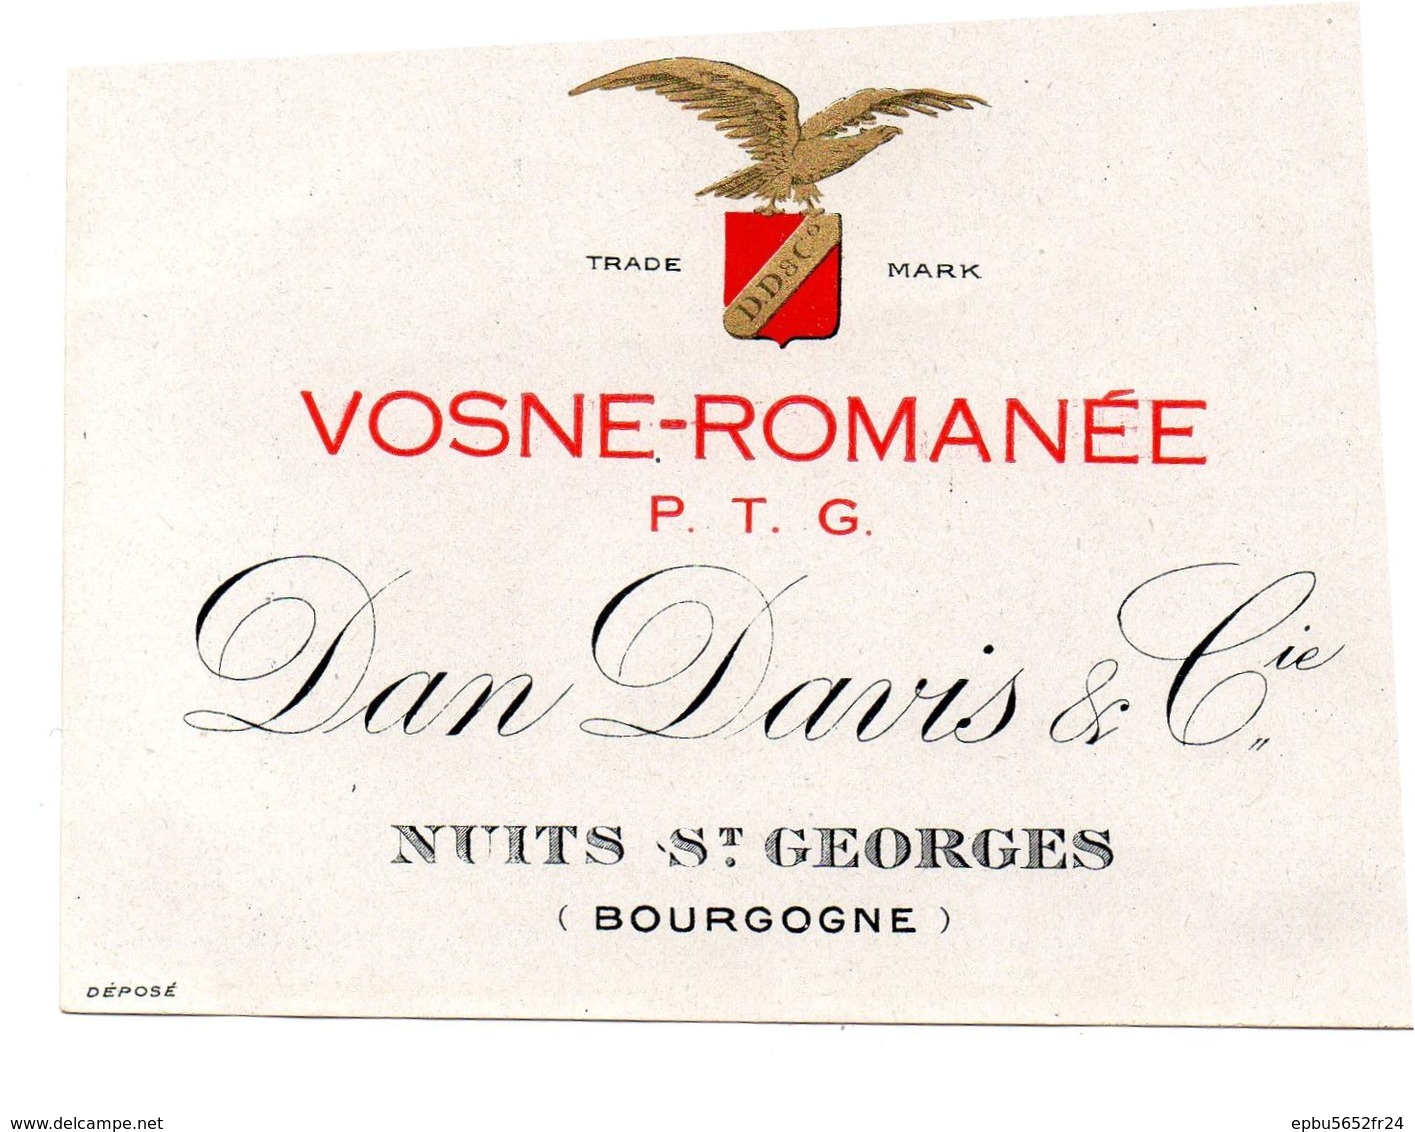 Etiquette (12,4X9) VOSNE-ROMANEE   P.T.G  Dan Davis & Cie  Nuits St Georges Bourgogne - Bourgogne